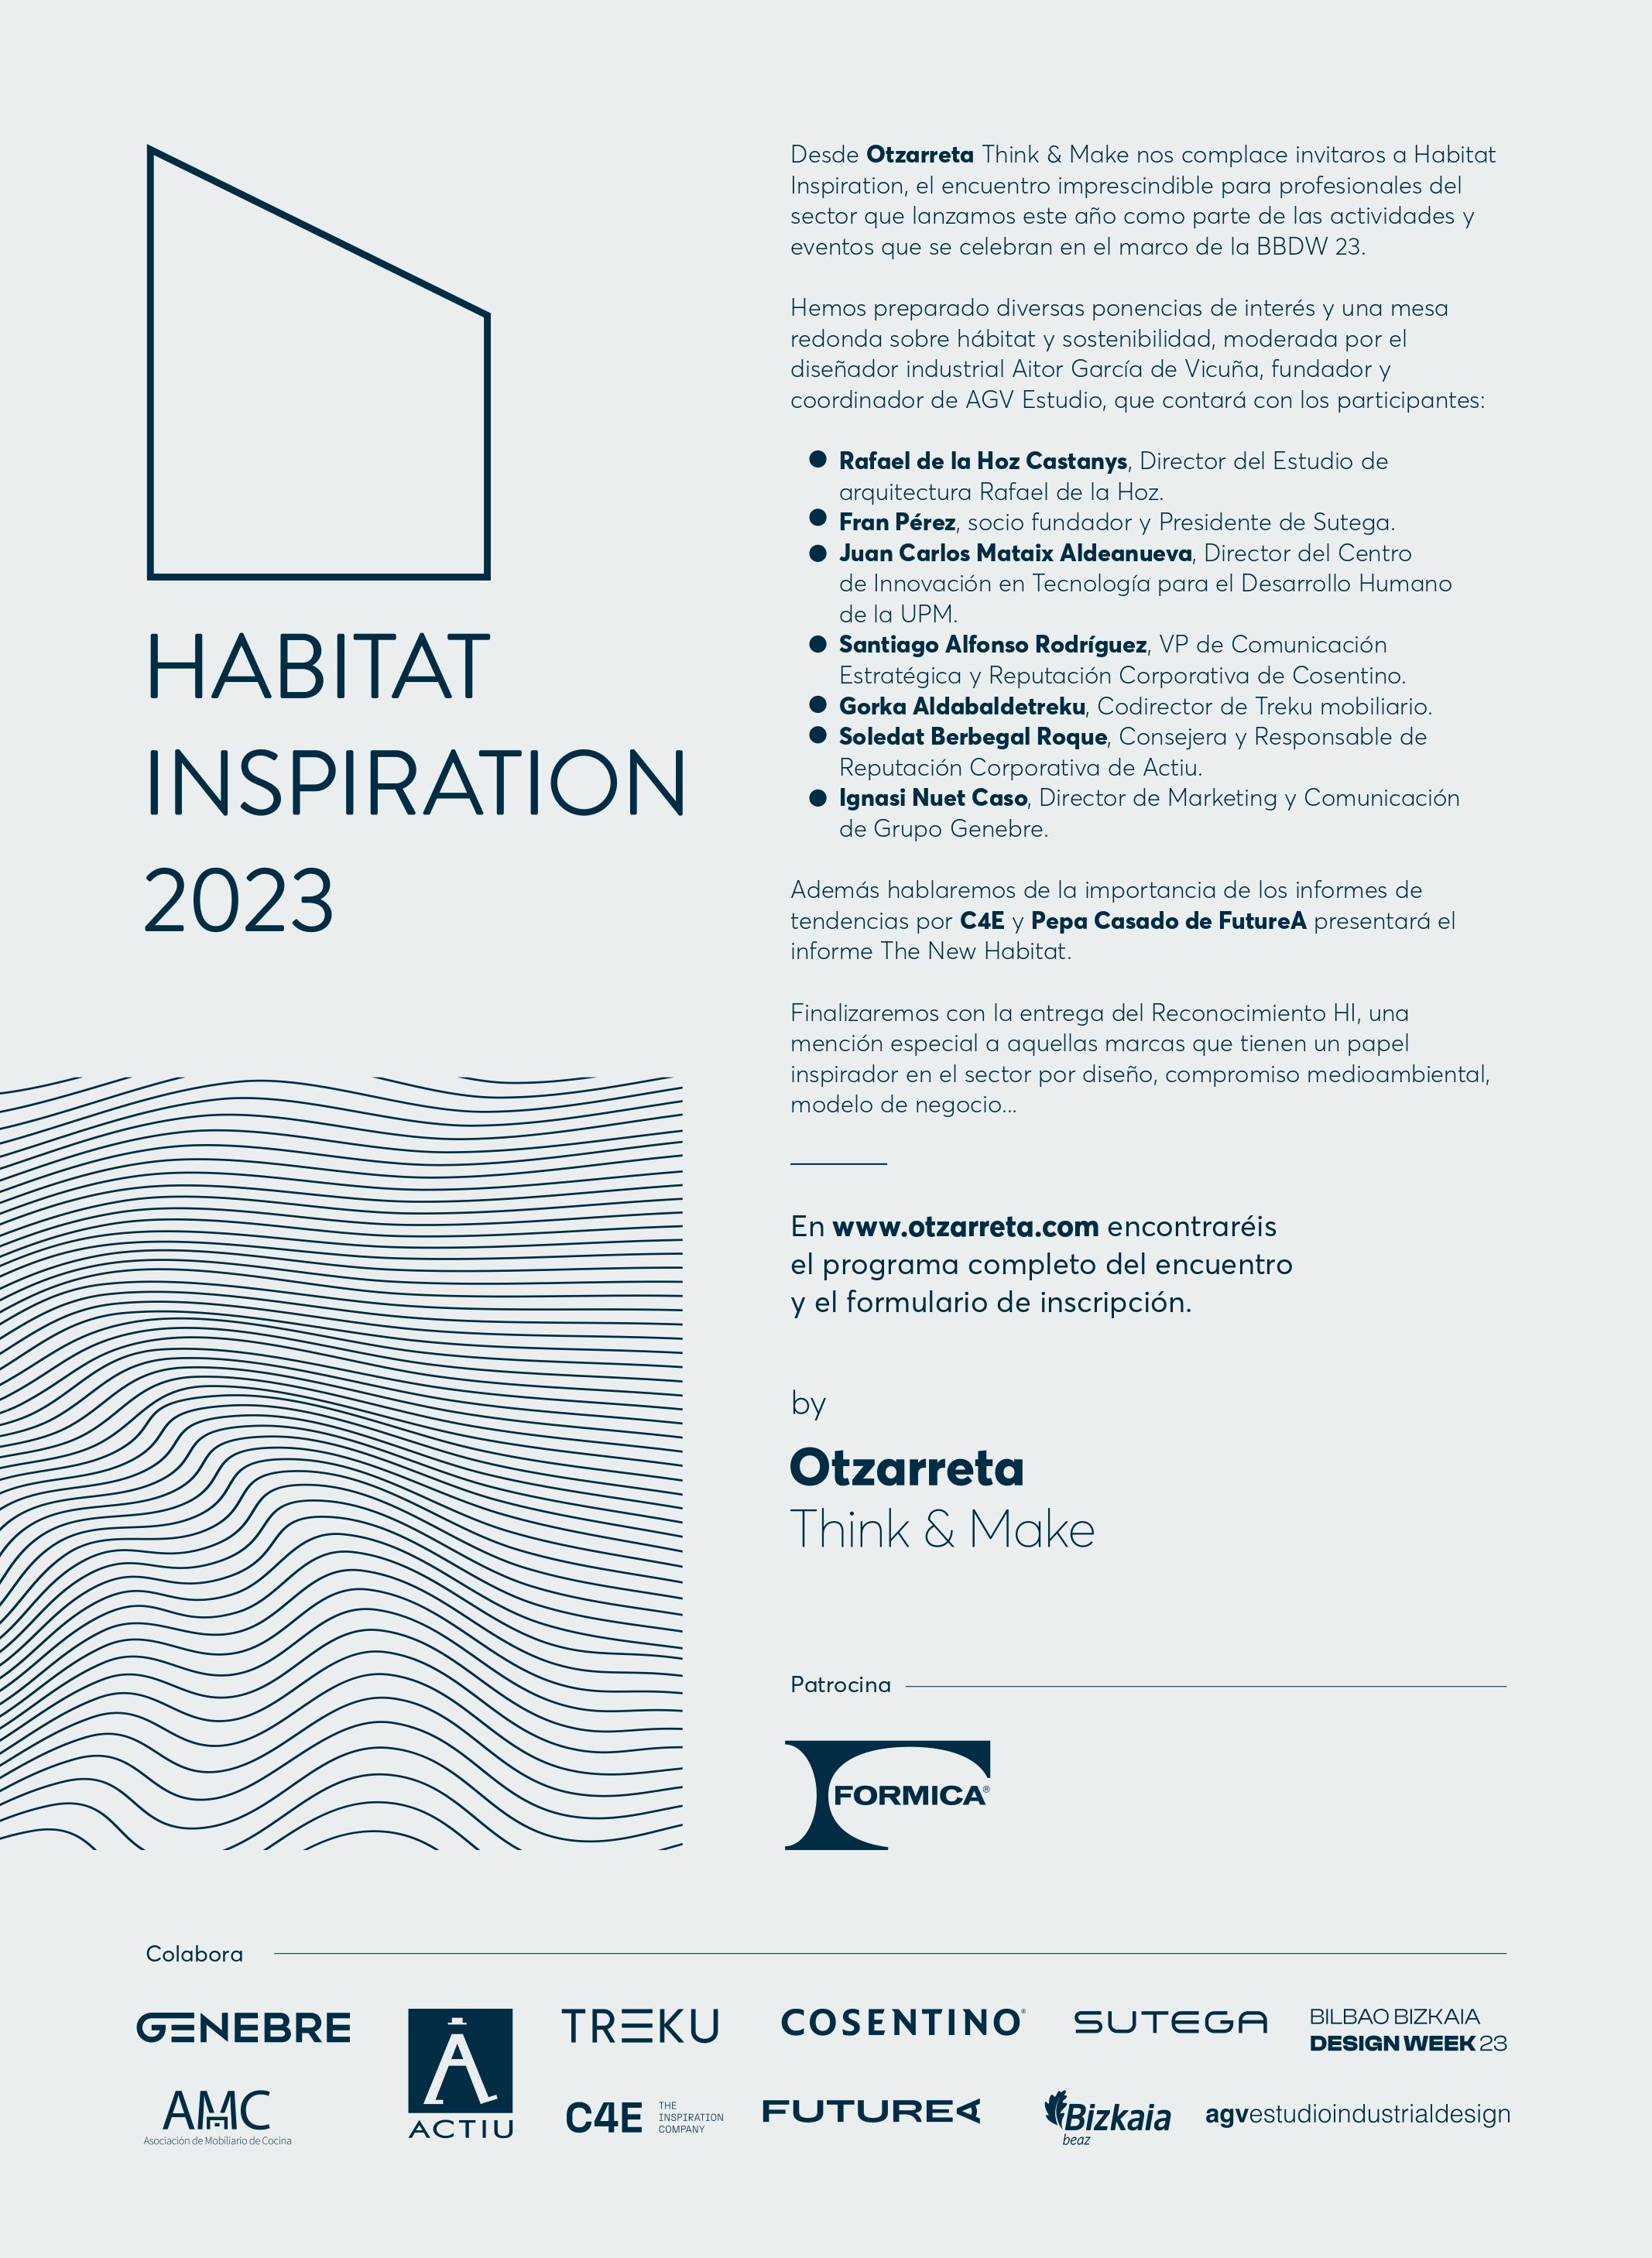 Llega Habitat Inspiration, el nuevo evento inspirador del sector en Bilbao